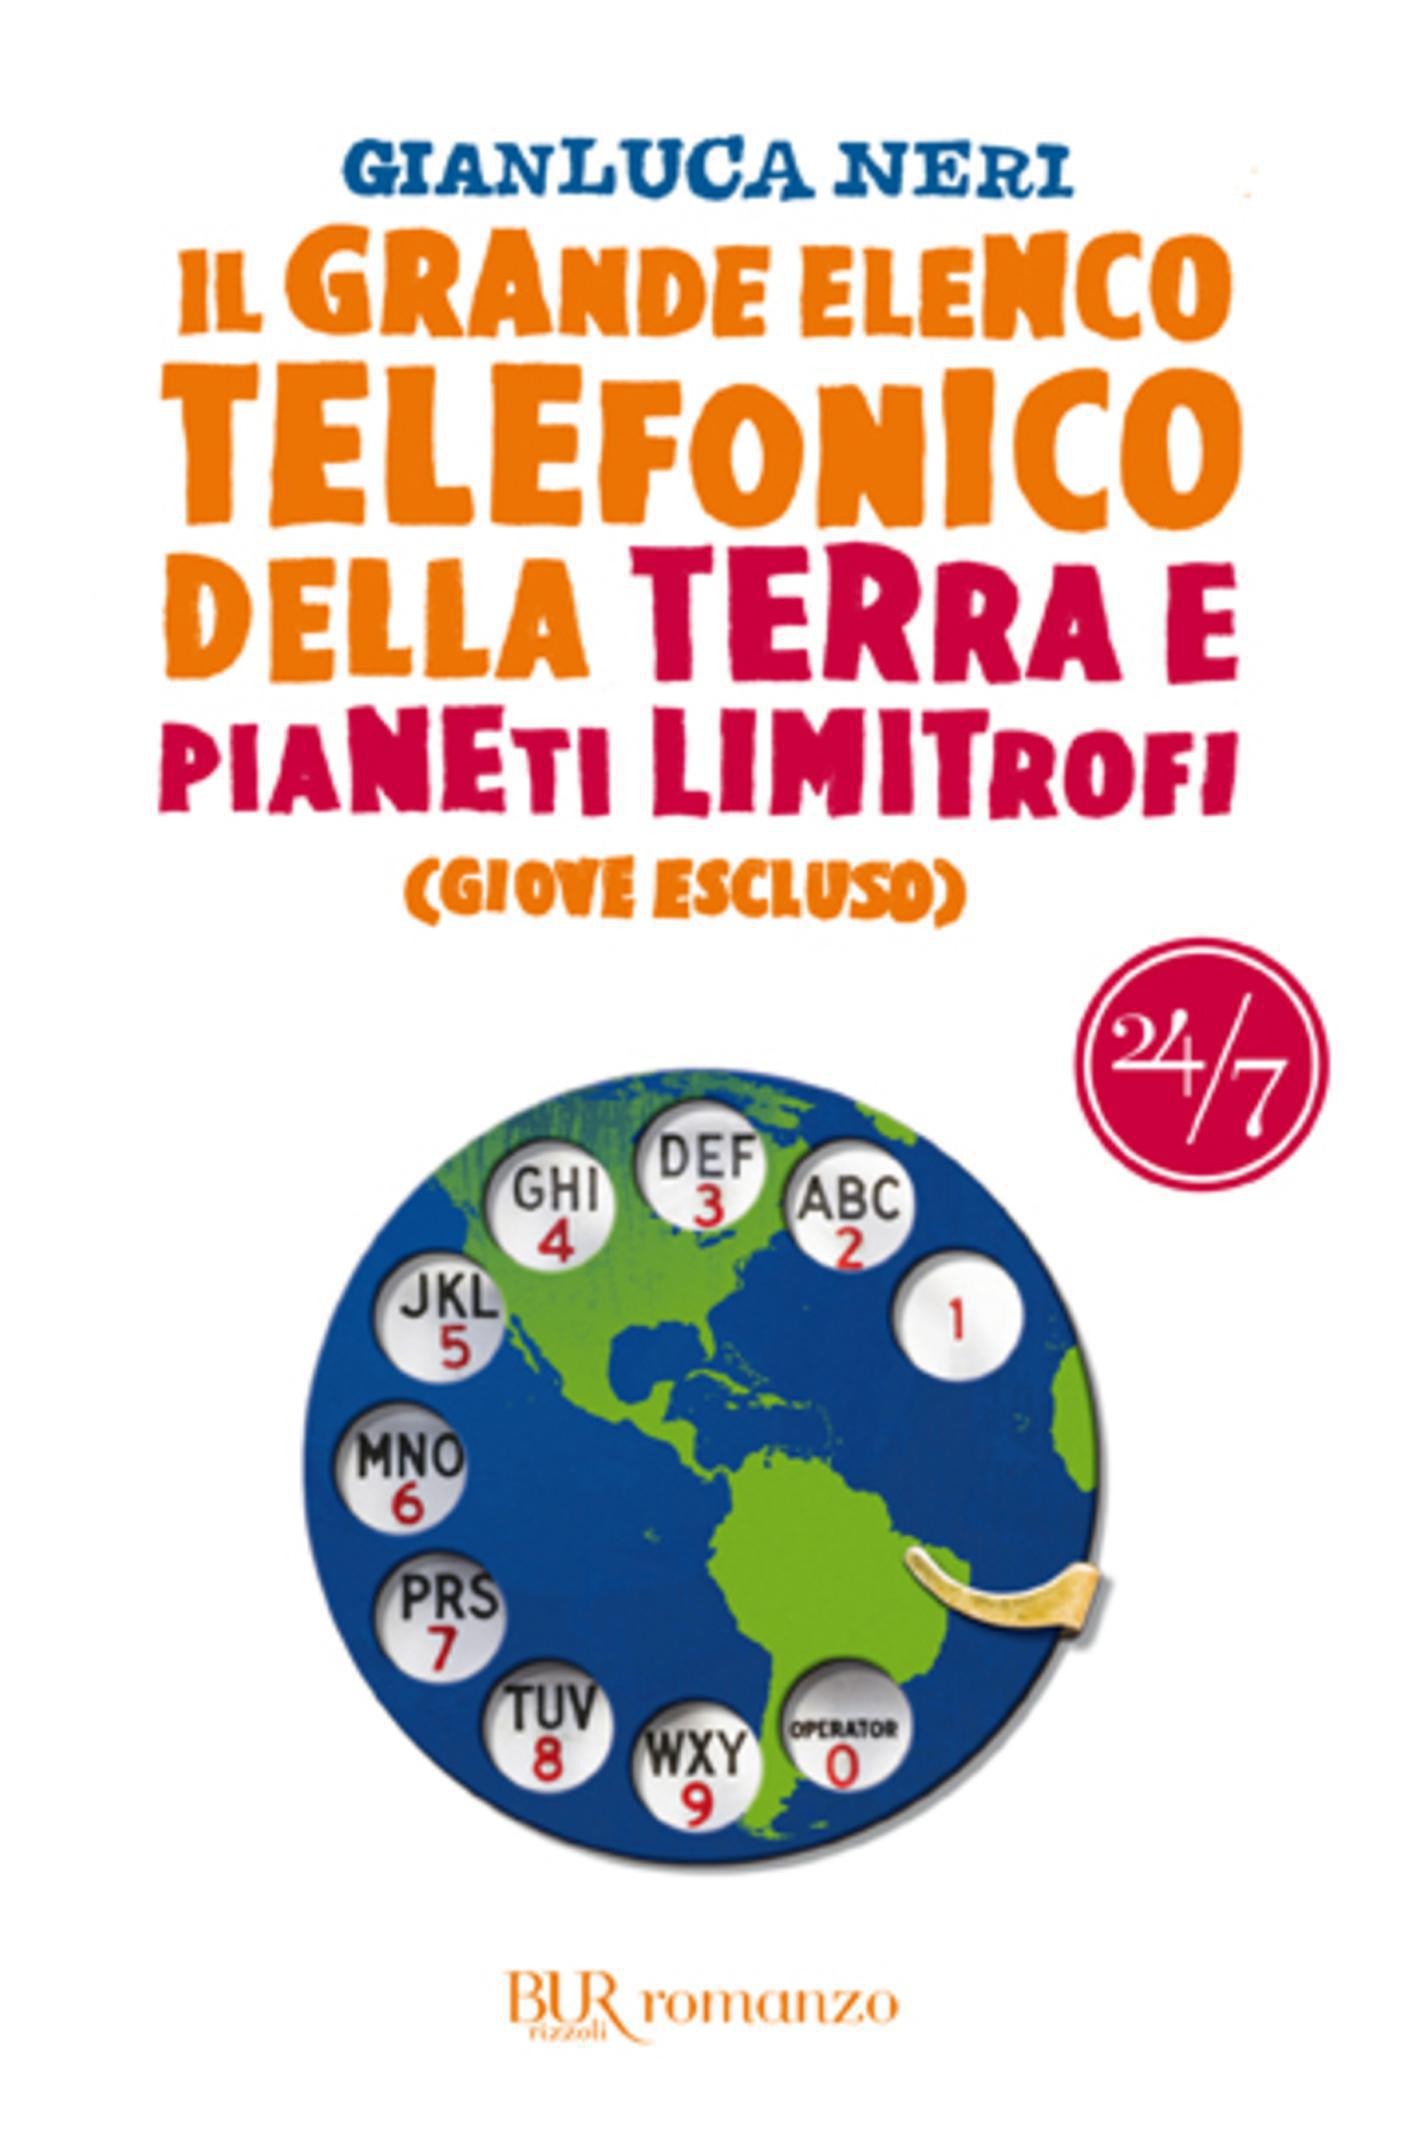 Il grande elenco telefonico della terra e pianeti limitrofi (Giove escluso) - Librerie.coop